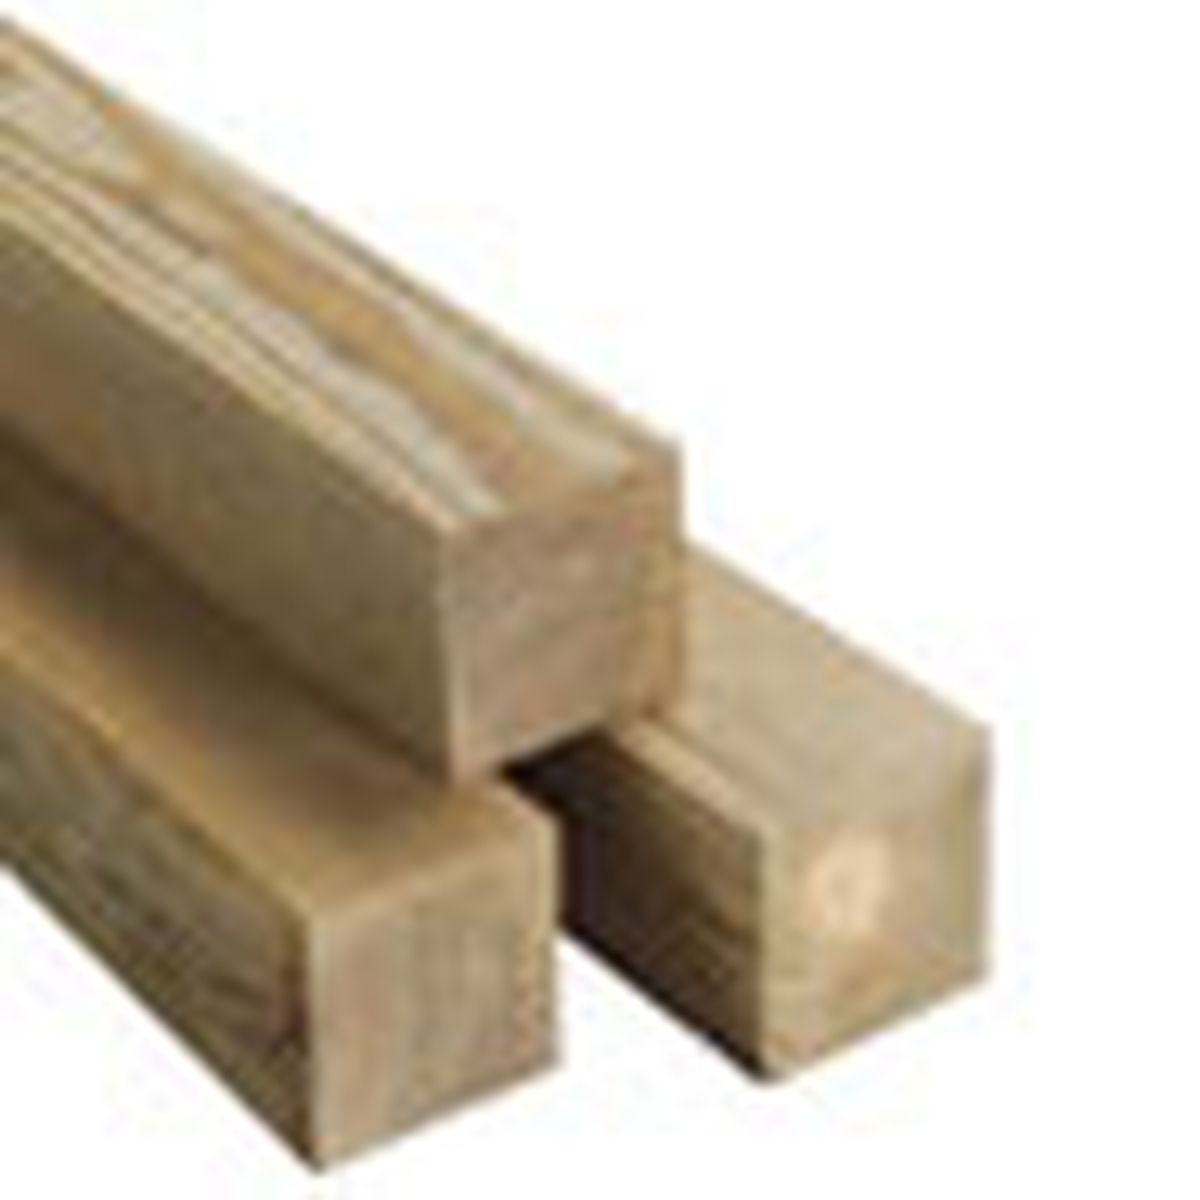 4x4 Lumber